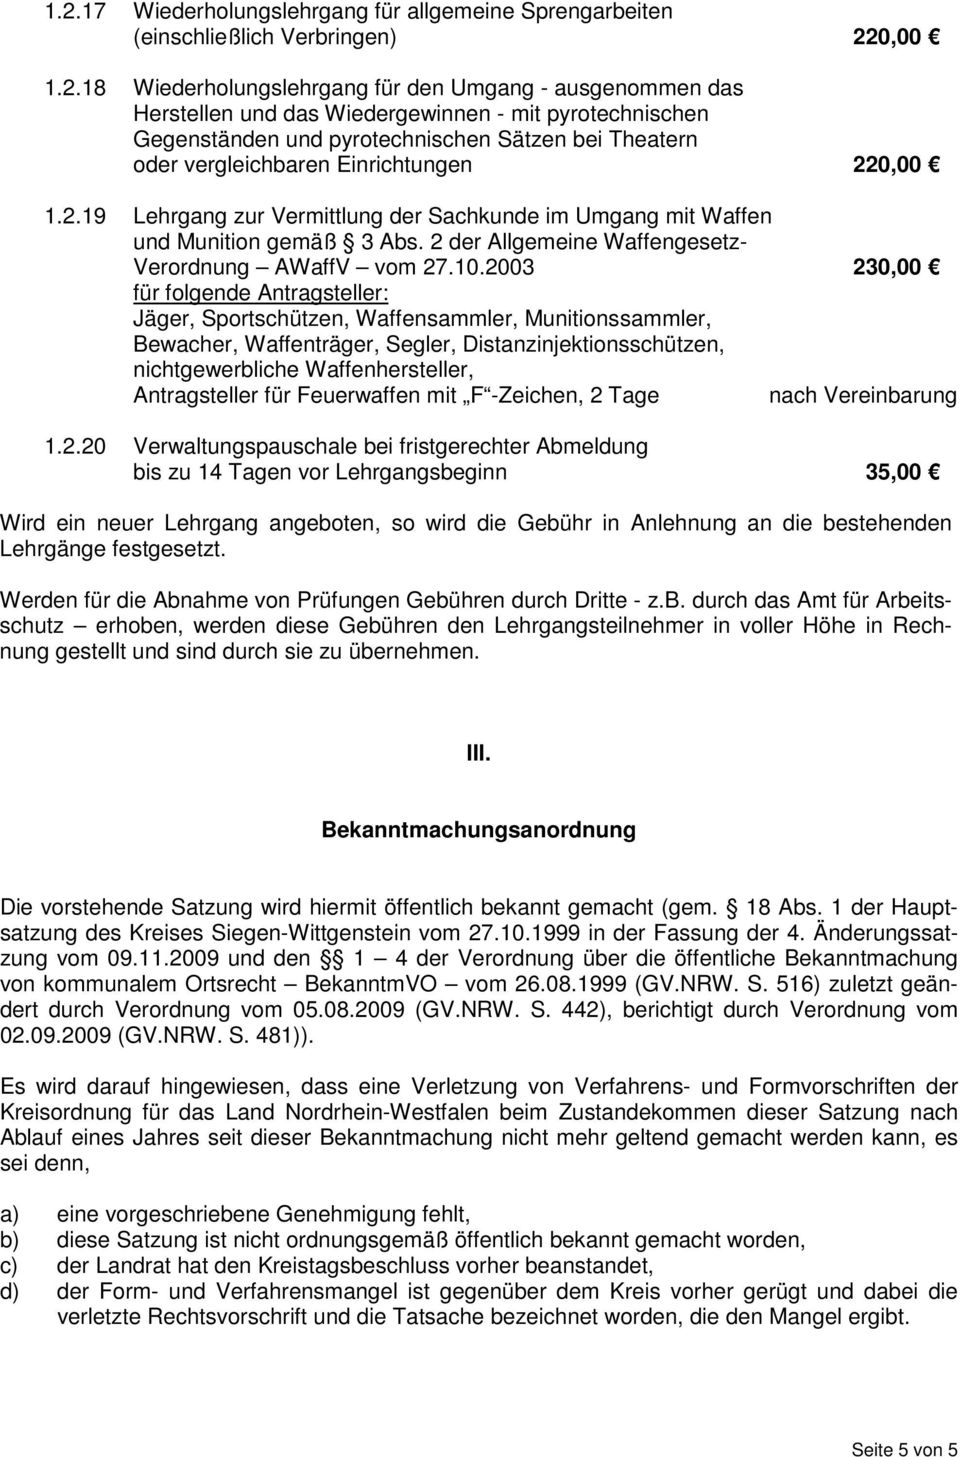 2 der Allgemeine Waffengesetz- Verordnung AWaffV vom 27.10.